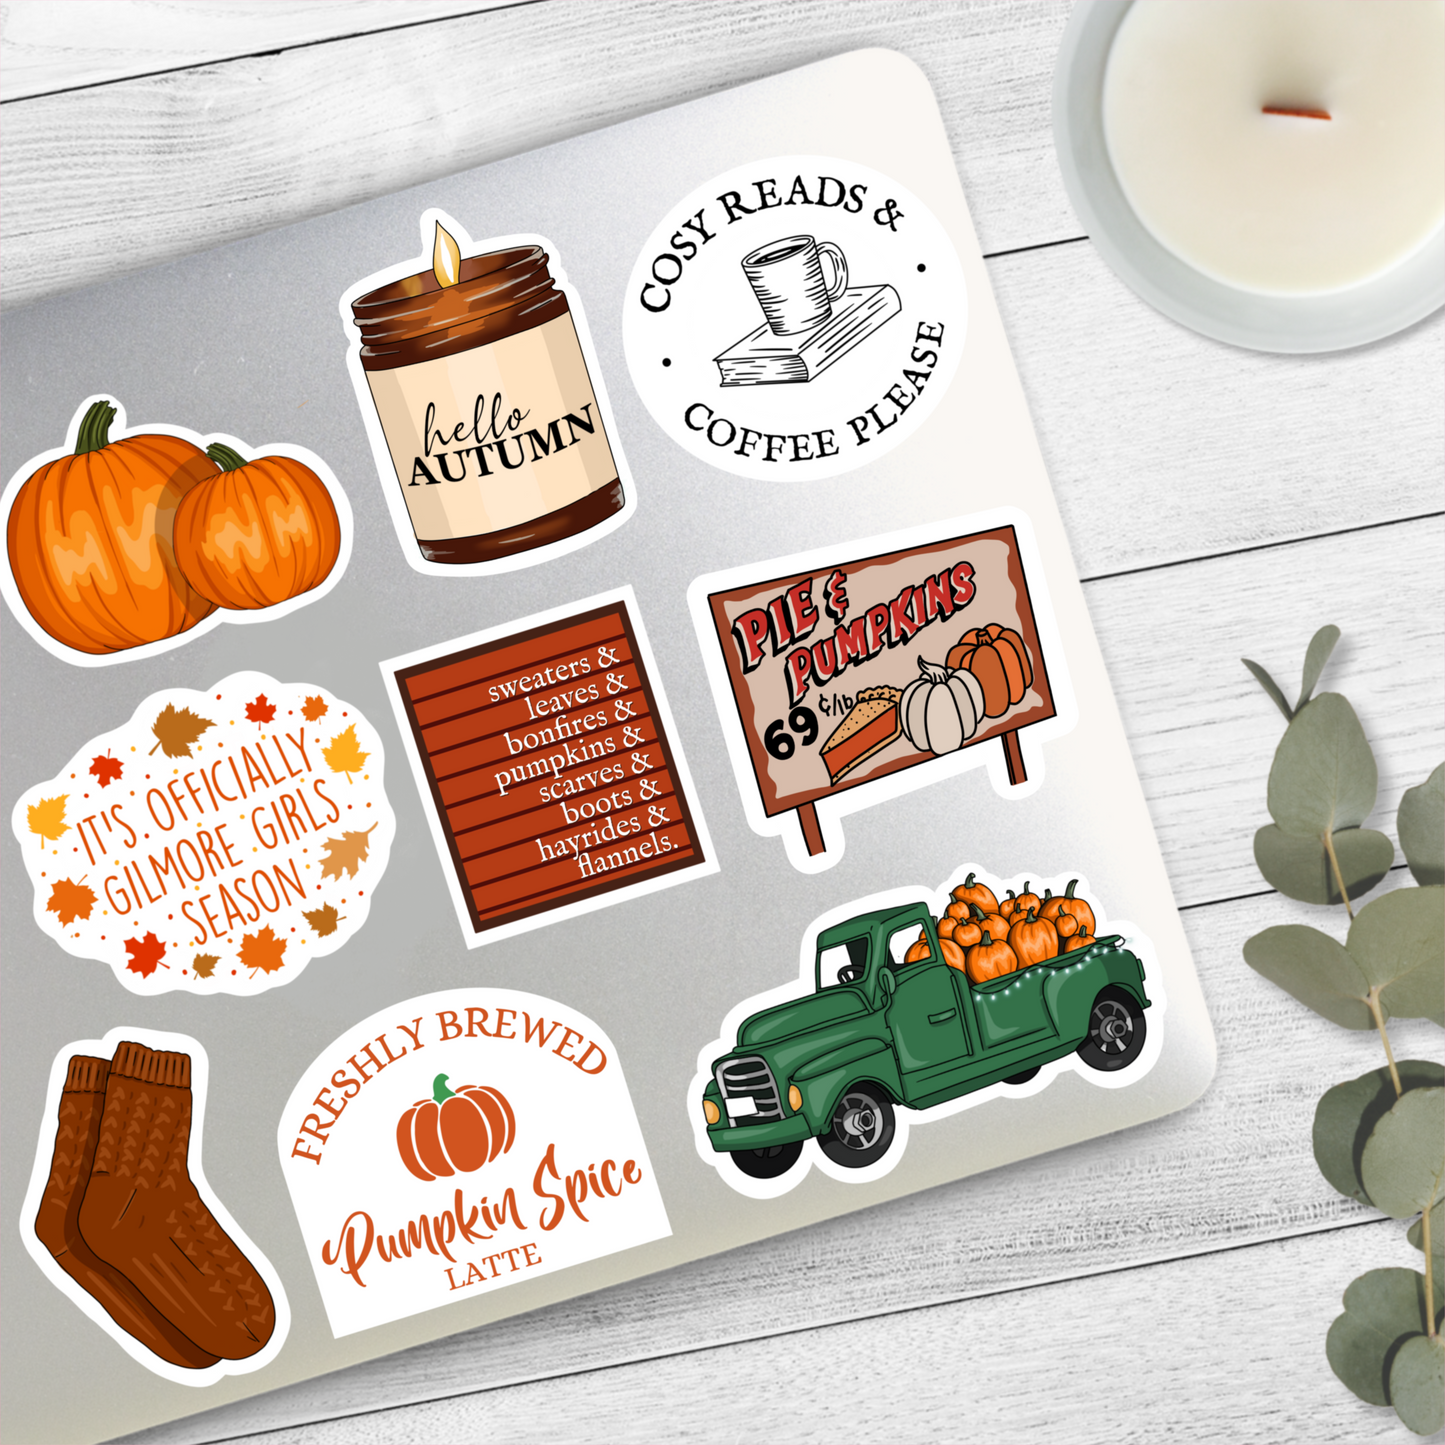 Pumpkin Spice Latte | It's Fall Y'All